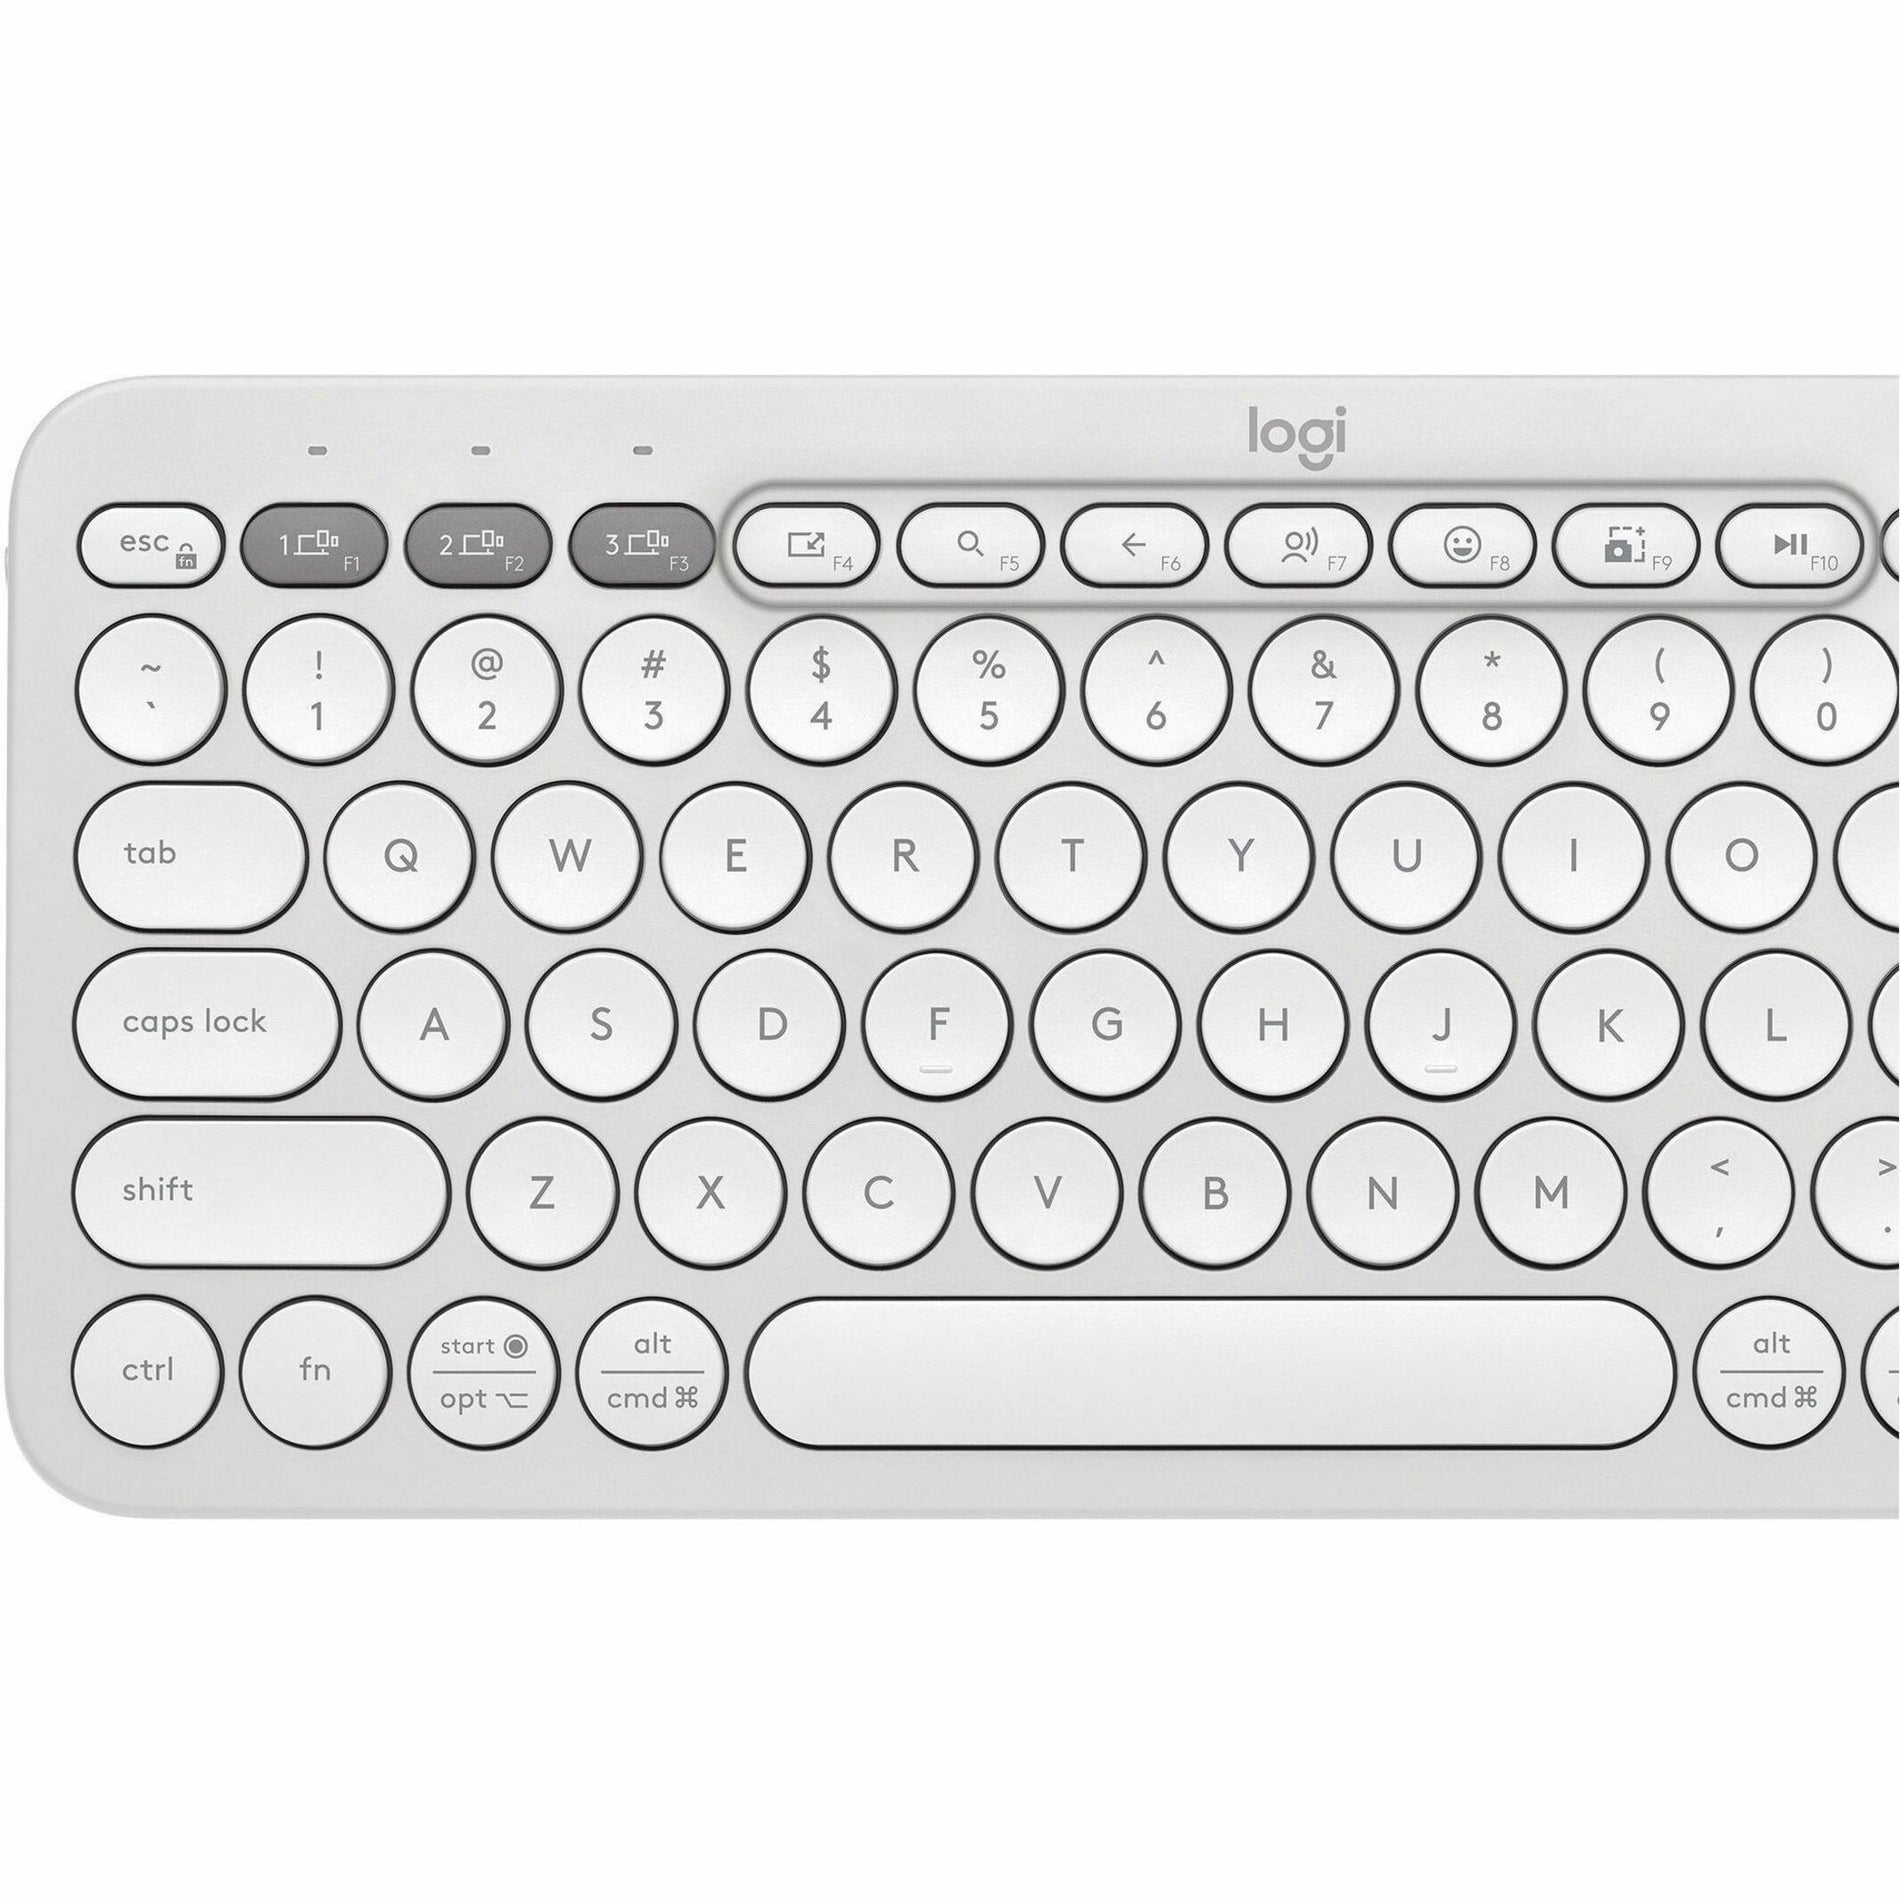 Logitech 920-012198 Pebble 2 Combo Wireless Keyboard and Mouse, Quiet Keys, Low-profile Keys, Slim